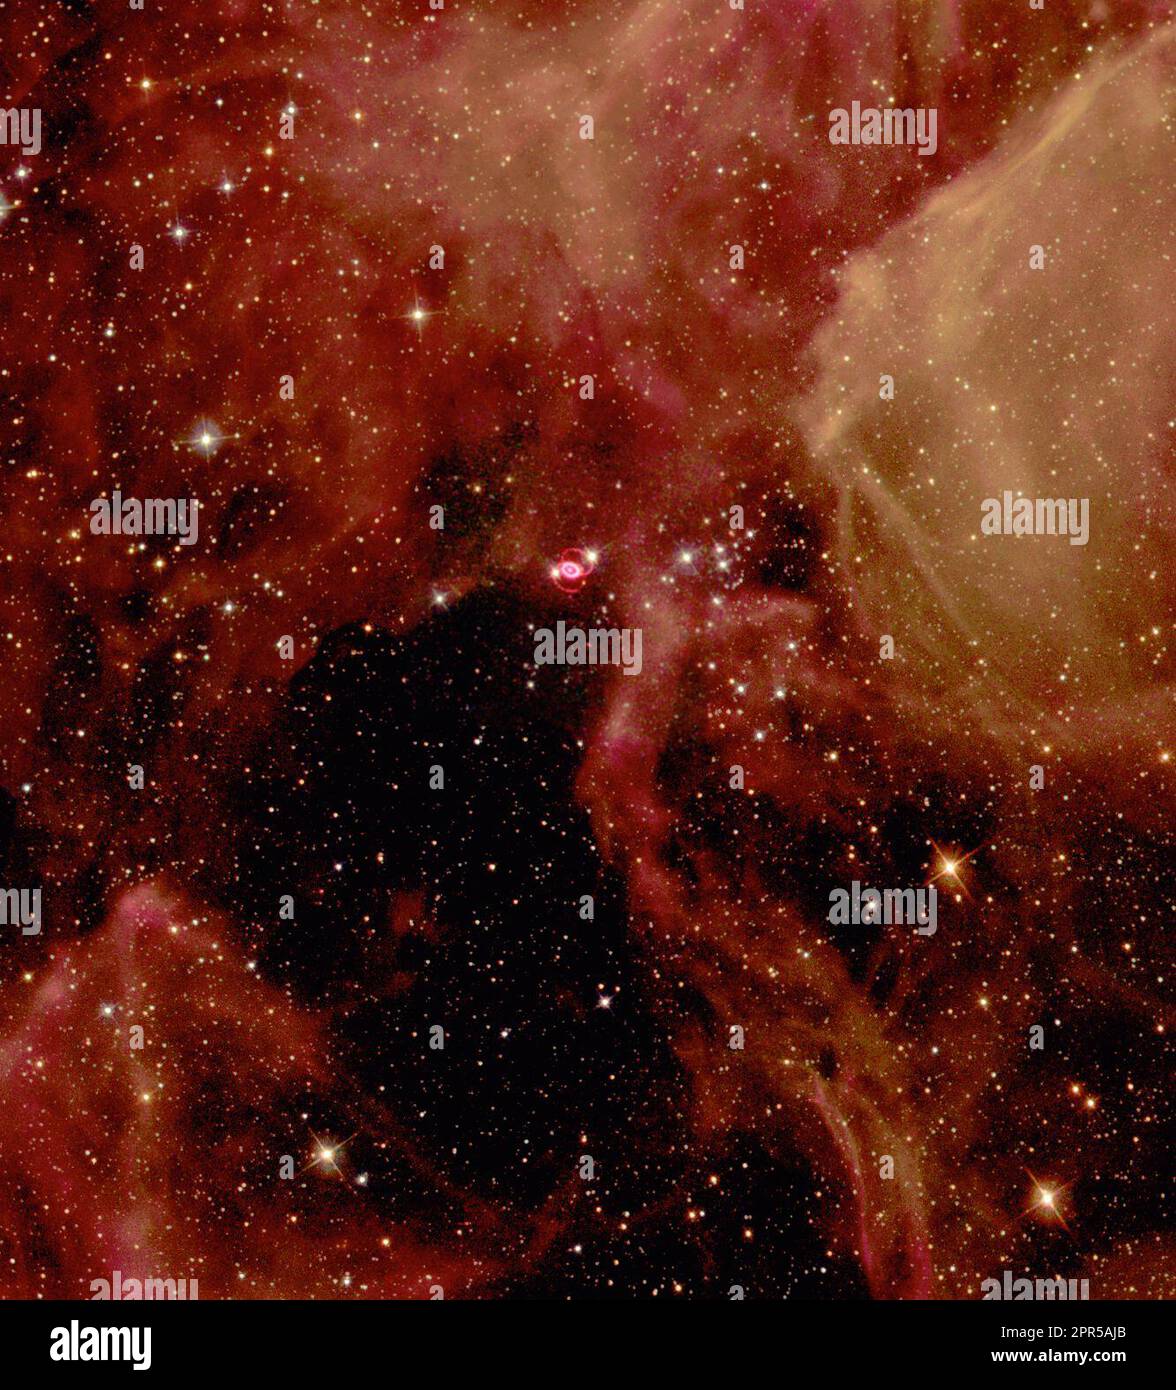 Glitzernde Sterne und Gasklumpen schaffen eine atemberaubende Kulisse für die Selbstzerstörung eines massiven Sterns, Supernova 1987A genannt, in der großen Magellanschen Wolke, einer nahen Galaxie. Astronomen auf der Südhalbkugel haben am 23. Februar 1987 die brillante Explosion dieses Sterns erlebt. Das in diesem NASA Hubble-Weltraumteleskop-Bild dargestellte Supernova-Überbleibsel, umgeben von inneren und äußeren Ringen aus Material, befindet sich in einem Wald aus ätherischen, diffusen Gaswolken. Dieses dreifarbige Bild besteht aus mehreren Bildern der Supernova und ihrer Nachbarregion, die mit dem weiten Feld und dem Planetary aufgenommen wurden Stockfoto